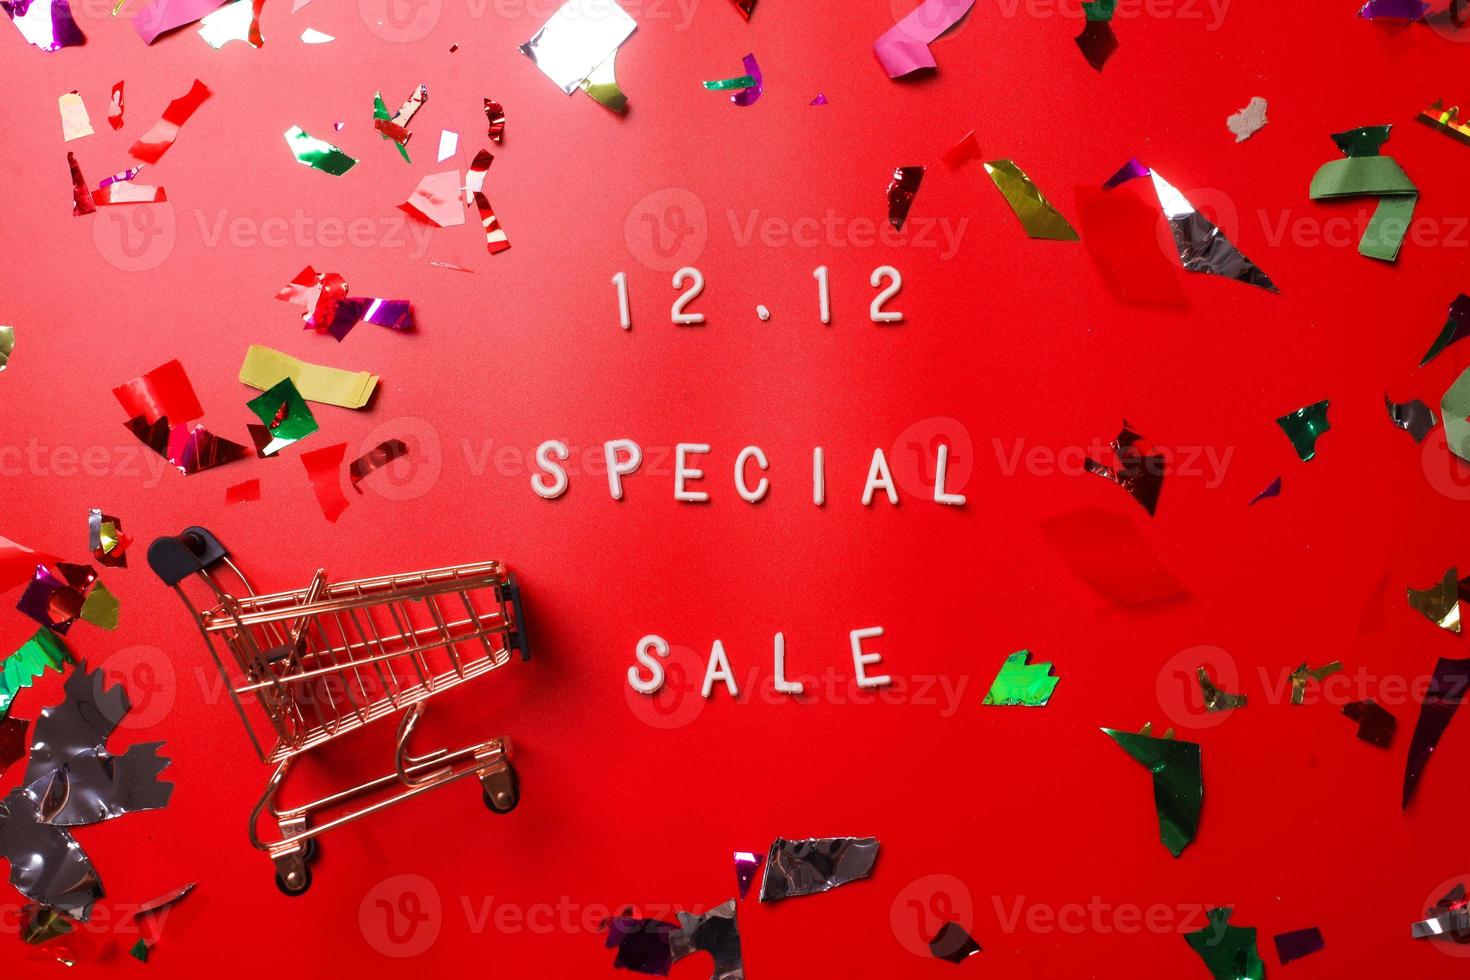 12.12 dias de compras super venda conceito plano leigo em fundo vermelho foto